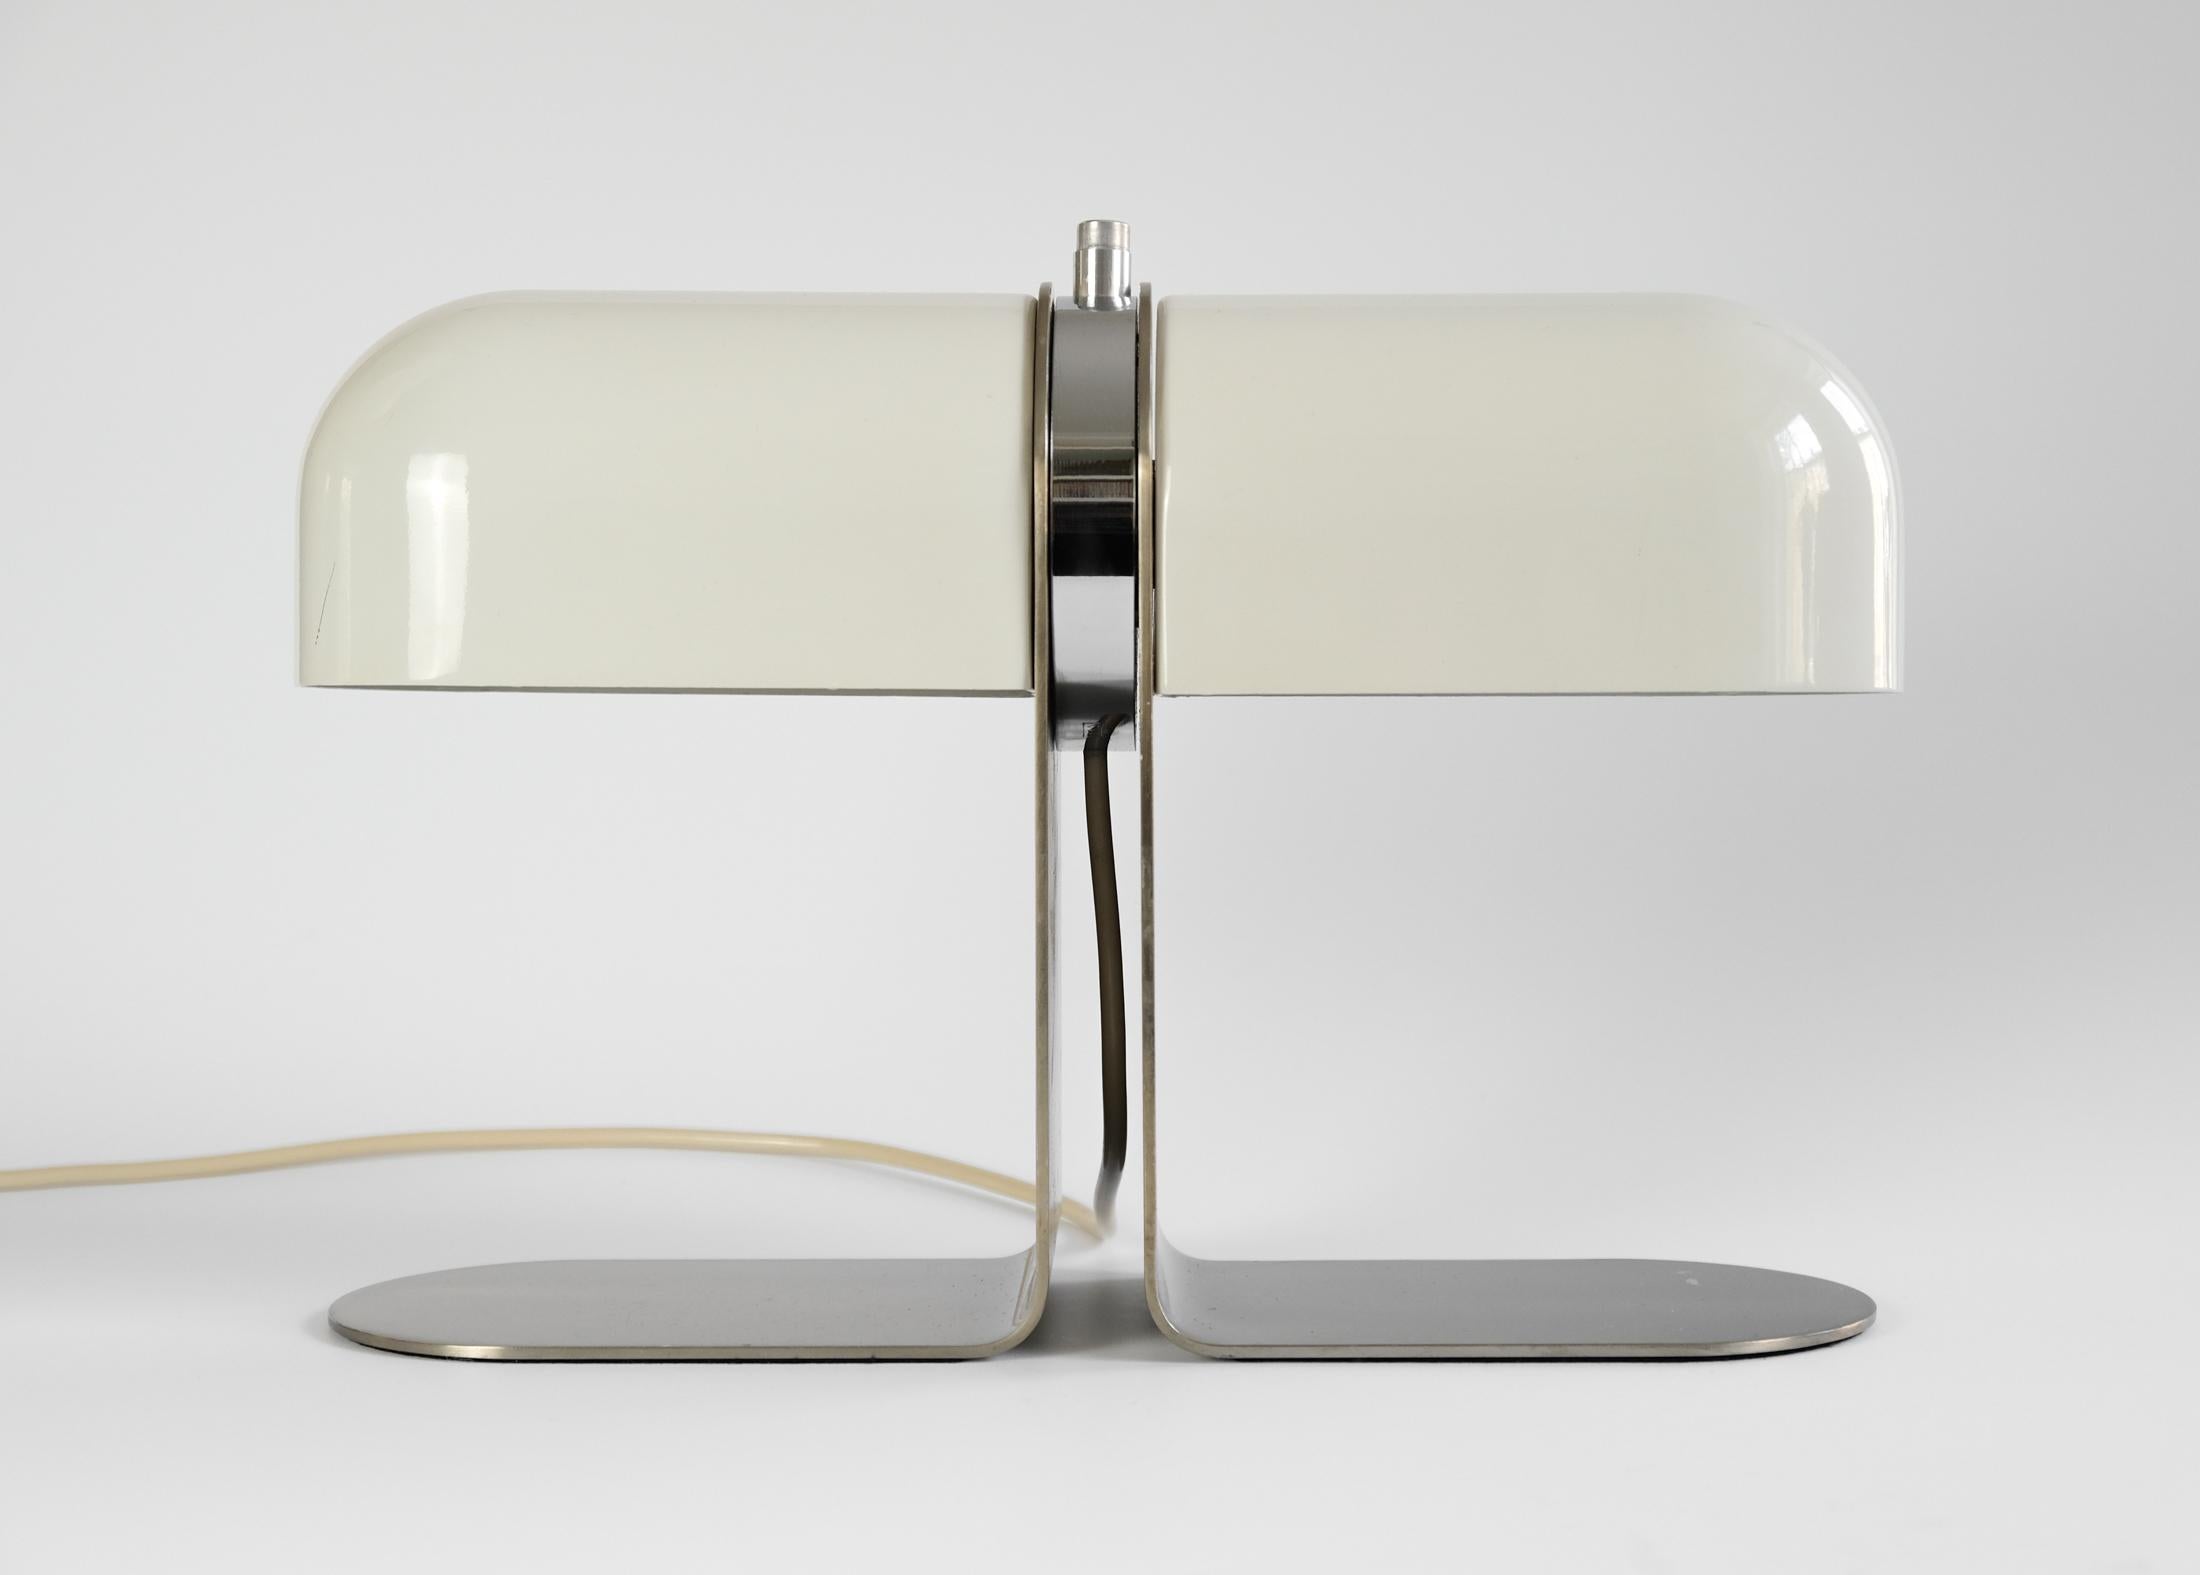 Cette lampe de table rare est un exemple précoce d'André Ricard, pour METALARTE, Espagne, vers le début des années 1970.

La lampe se compose d'une tête rotative constituée d'un bloc circulaire chromé, d'un interrupteur monté et de deux abat-jours